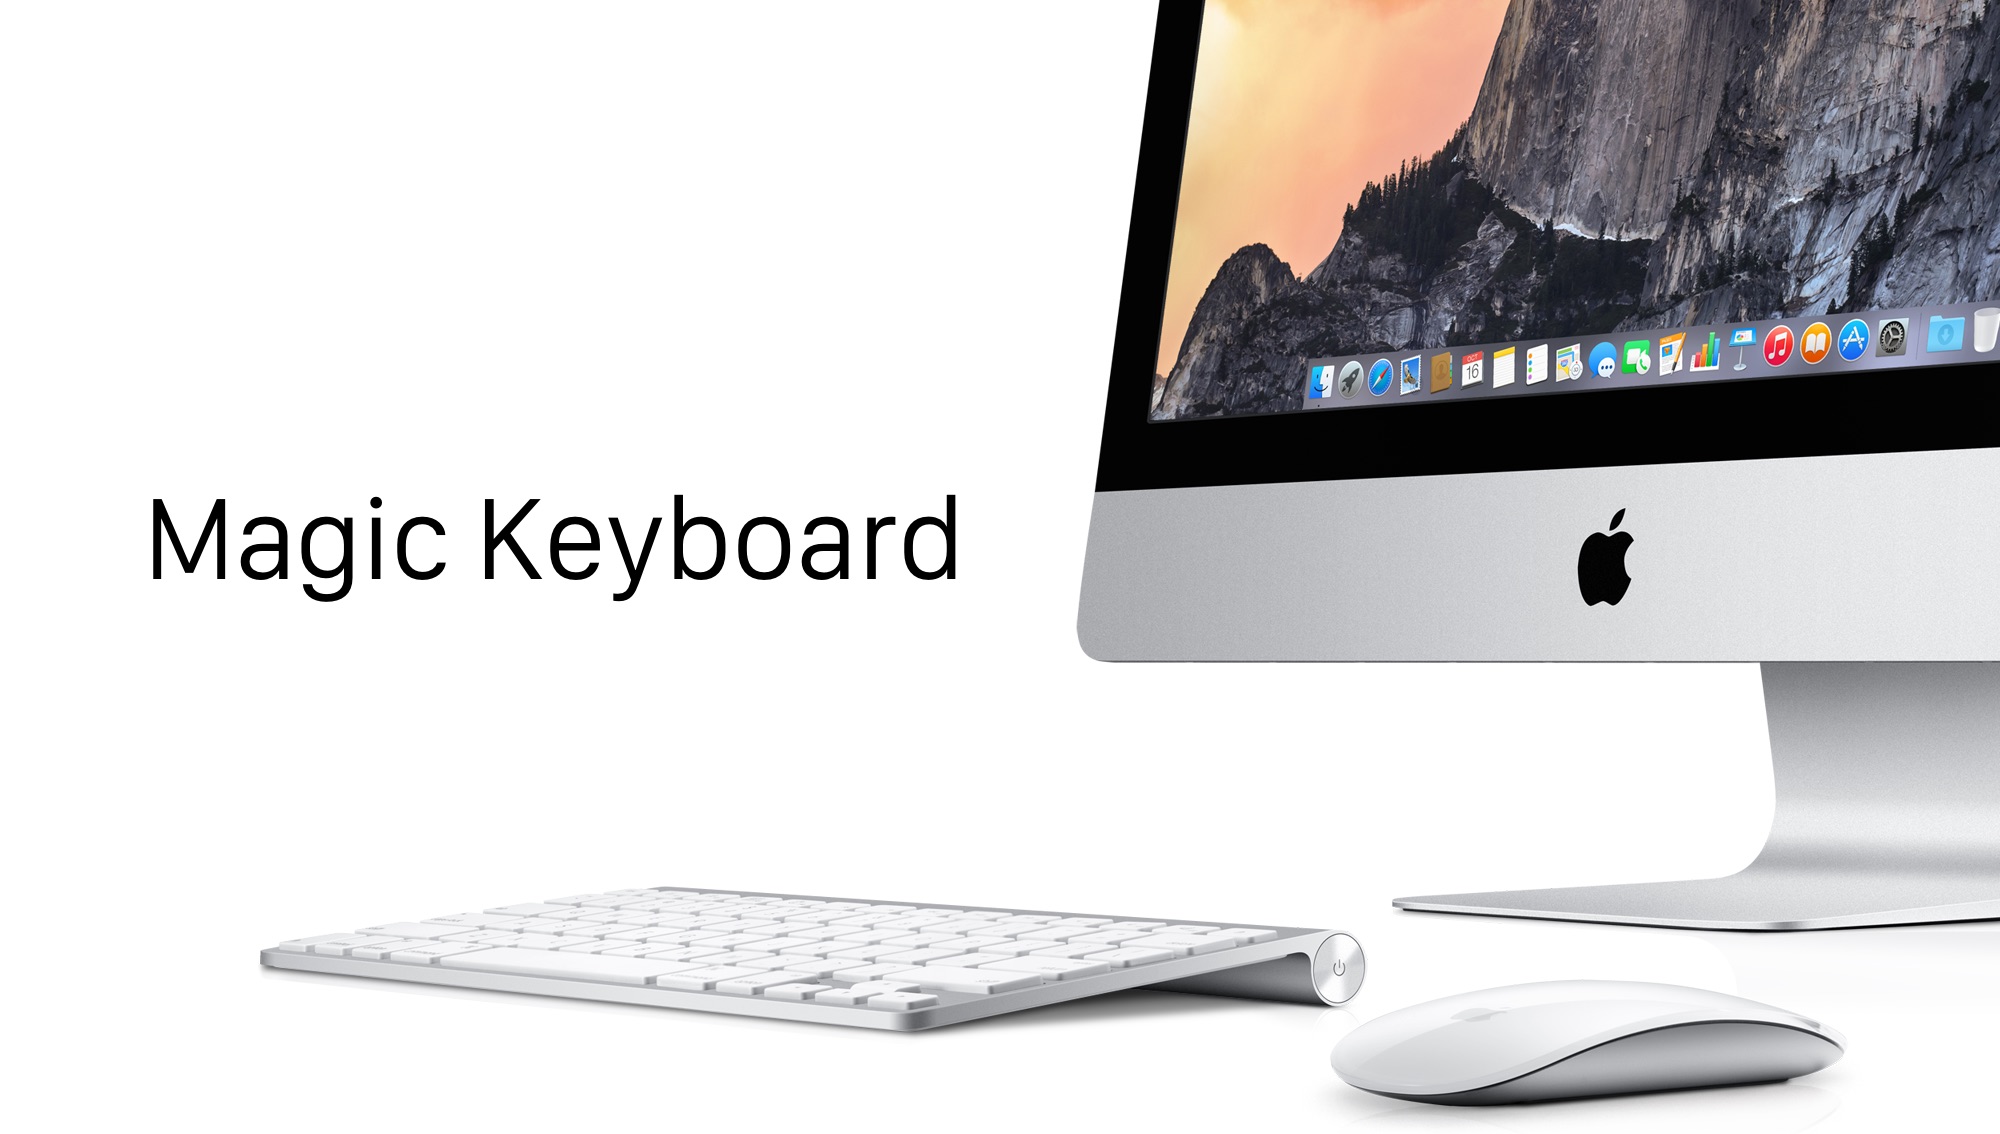 Appleの新しい入力デバイスと思われるMagic Keyboard、Magic Mouse 2、Magic Trackpad 2という名前が